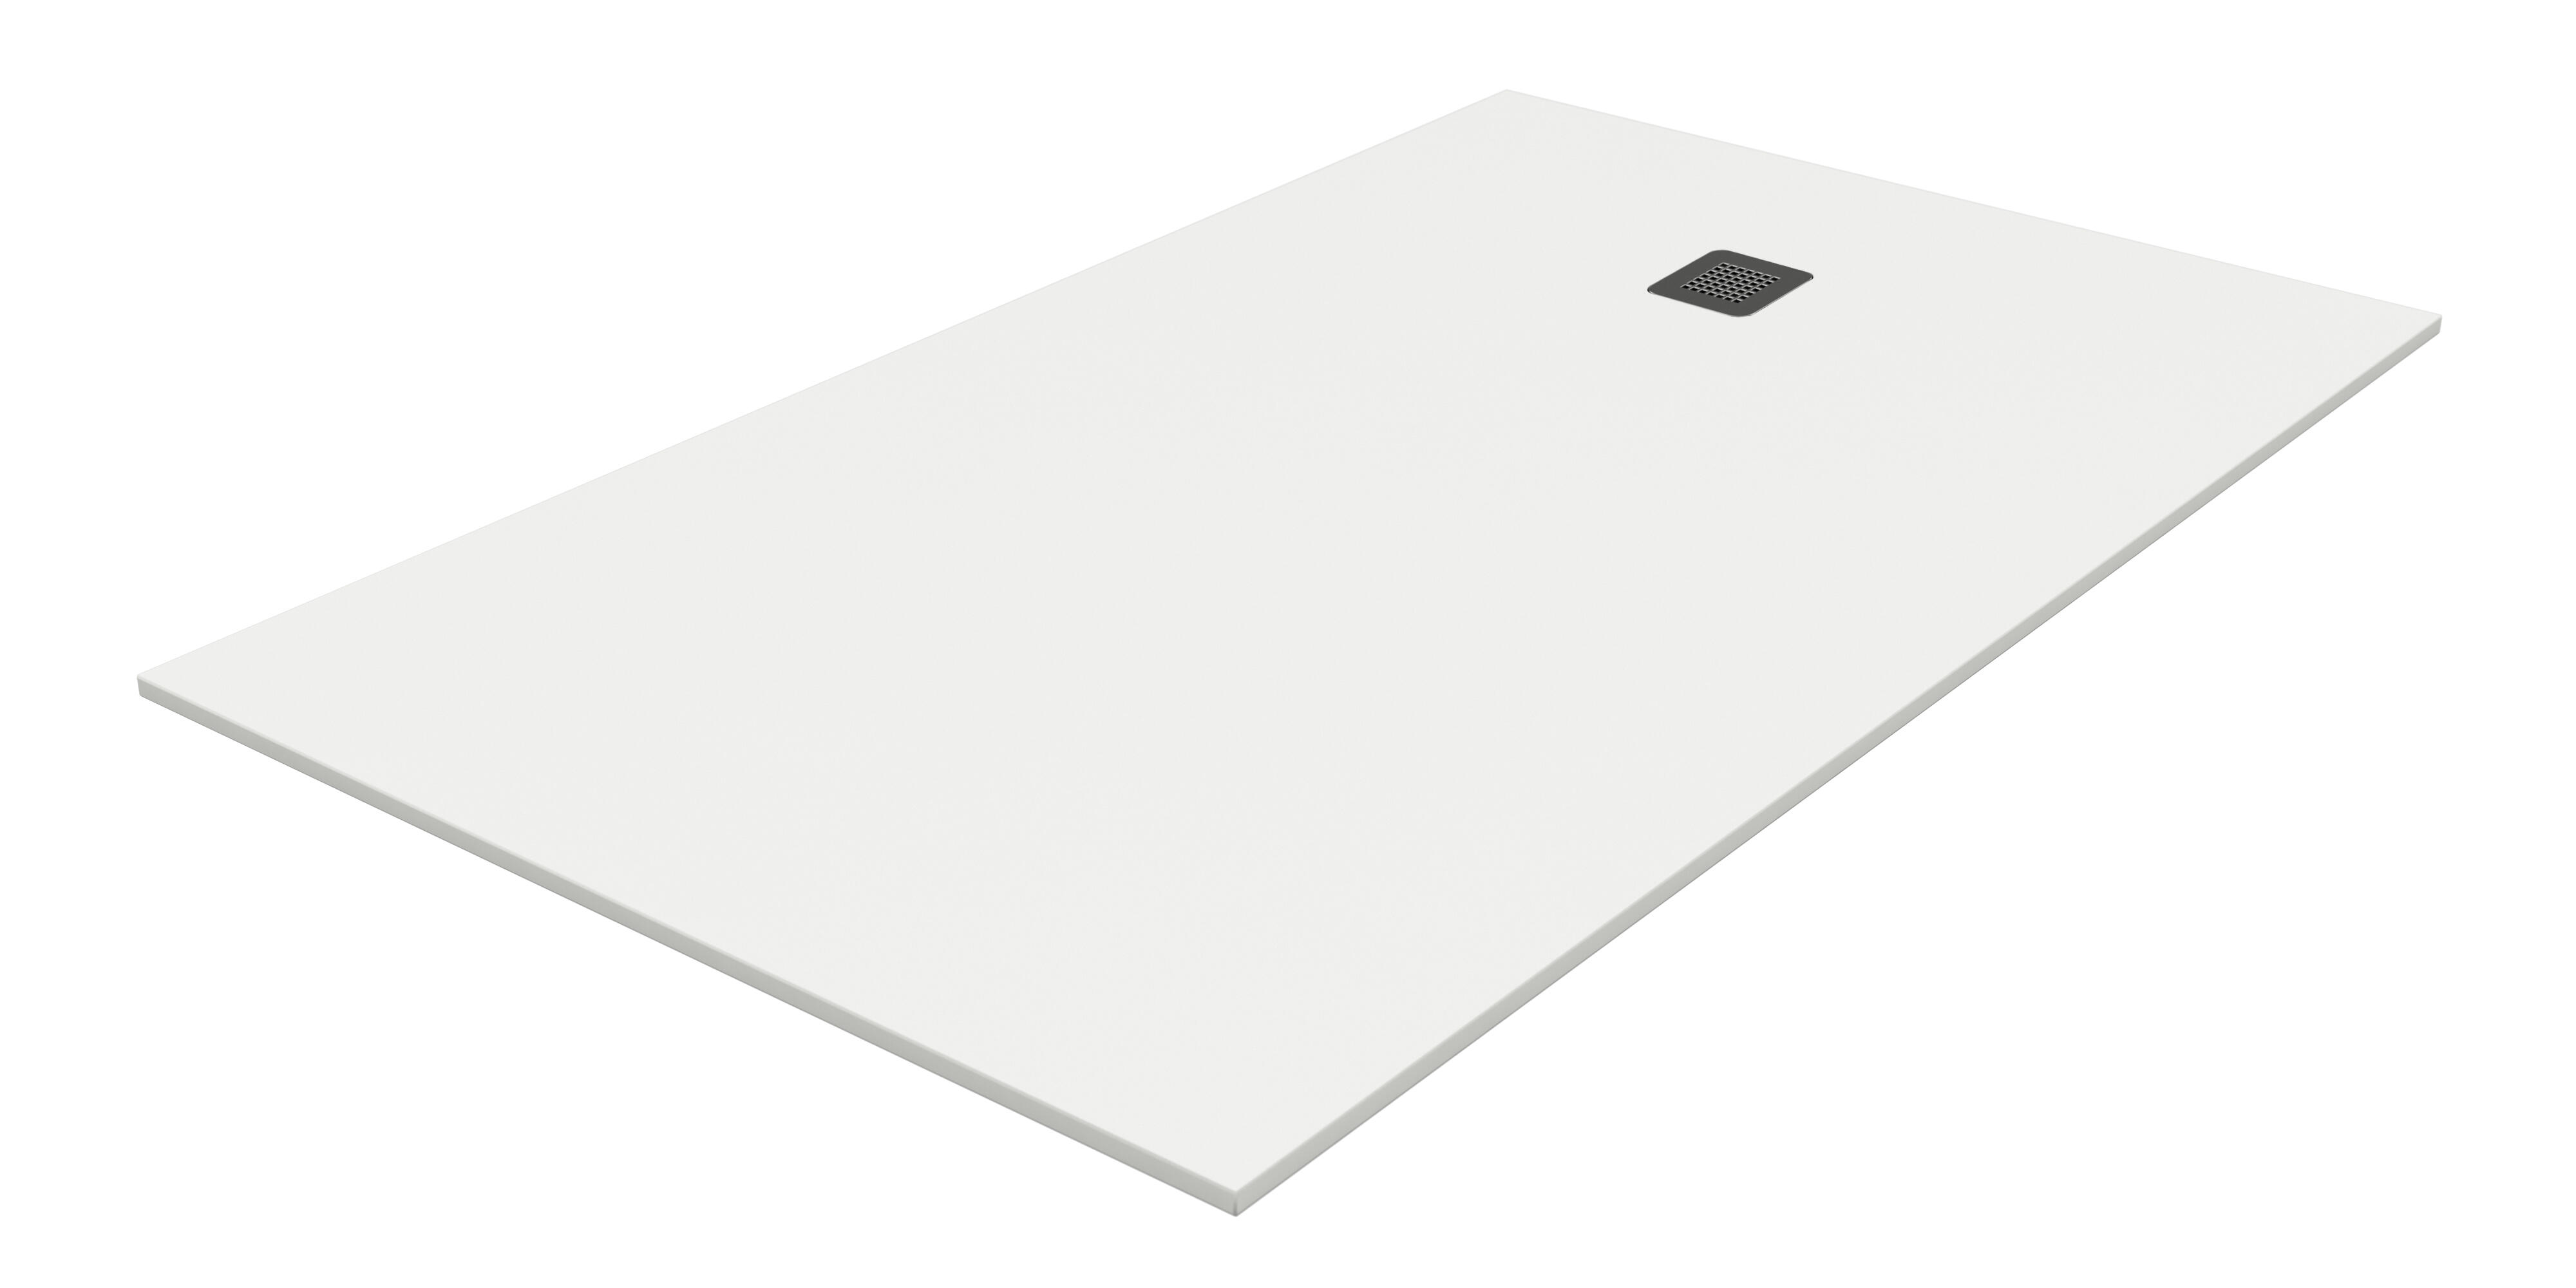 Plato de ducha pietra 190x80 cm blanco